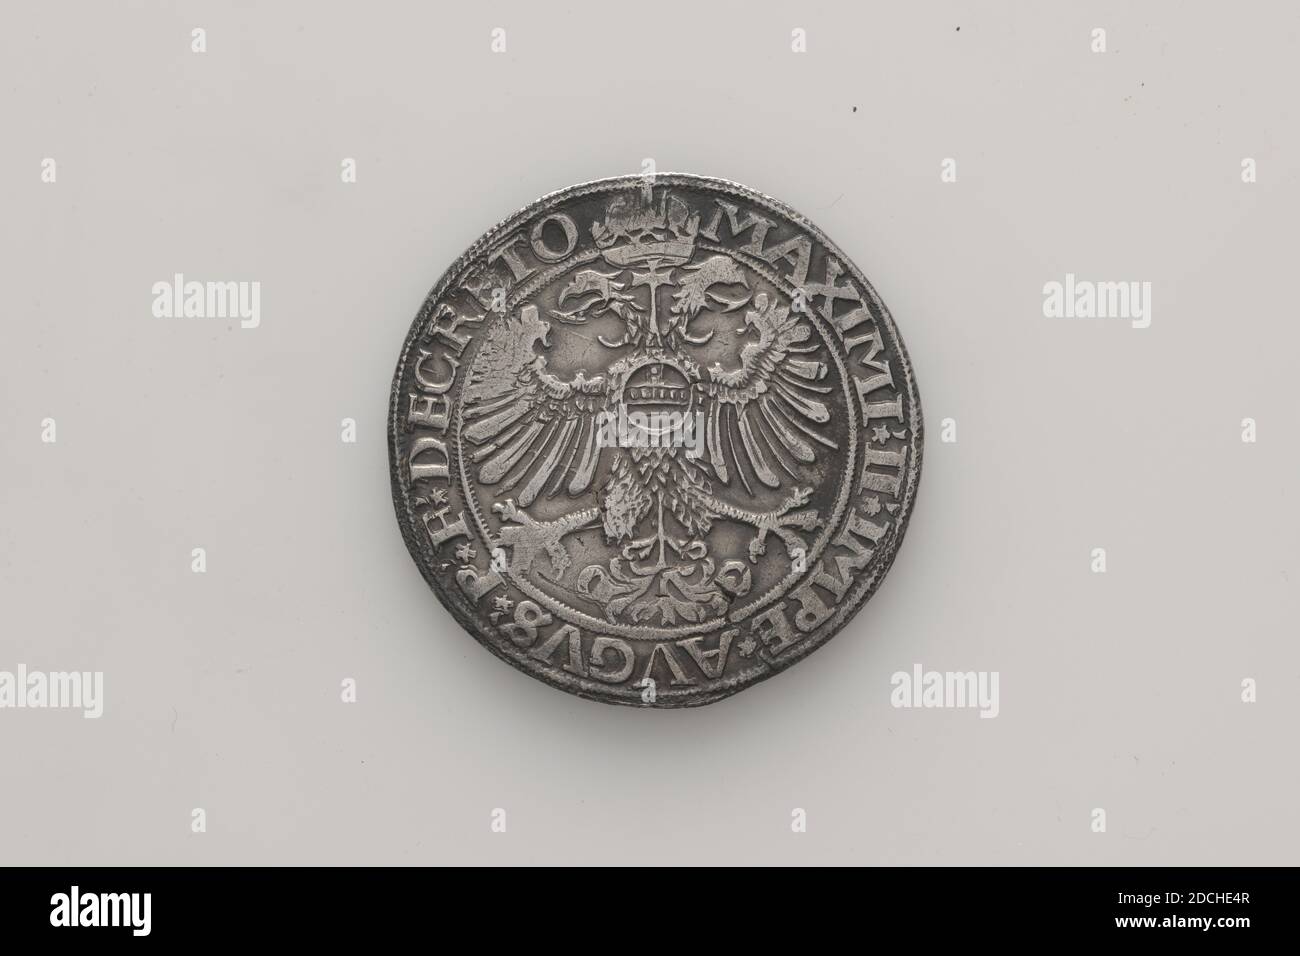 Münze (Tauschmedium), Anonymous, 1568, geprägt, Allgemein: 4.1 x 0,2cm (41 x 2mm), Gewicht: 28,4g, Adler, Wappen (Zeichen), Silberner Reichstaler Kaiser Maximilians II. Aus Nijmegen, geprägt 1568. Auf der Vorderseite ist ein gekröntes Wappen mit einem doppelköpfigen Adler, mit zwei Löwen als Waffenträger. Unter dem Jahr 1568, und die Überschrift: NOVIOMAGIENSIS CIVILATIS IMPERIALIS. Auf der Rückseite der gleiche doppelköpfige Adler, mit der Inschrift: MAXIMI.II.IMPE.AVGVS.P.F. DECRETO, 1926 Stockfoto